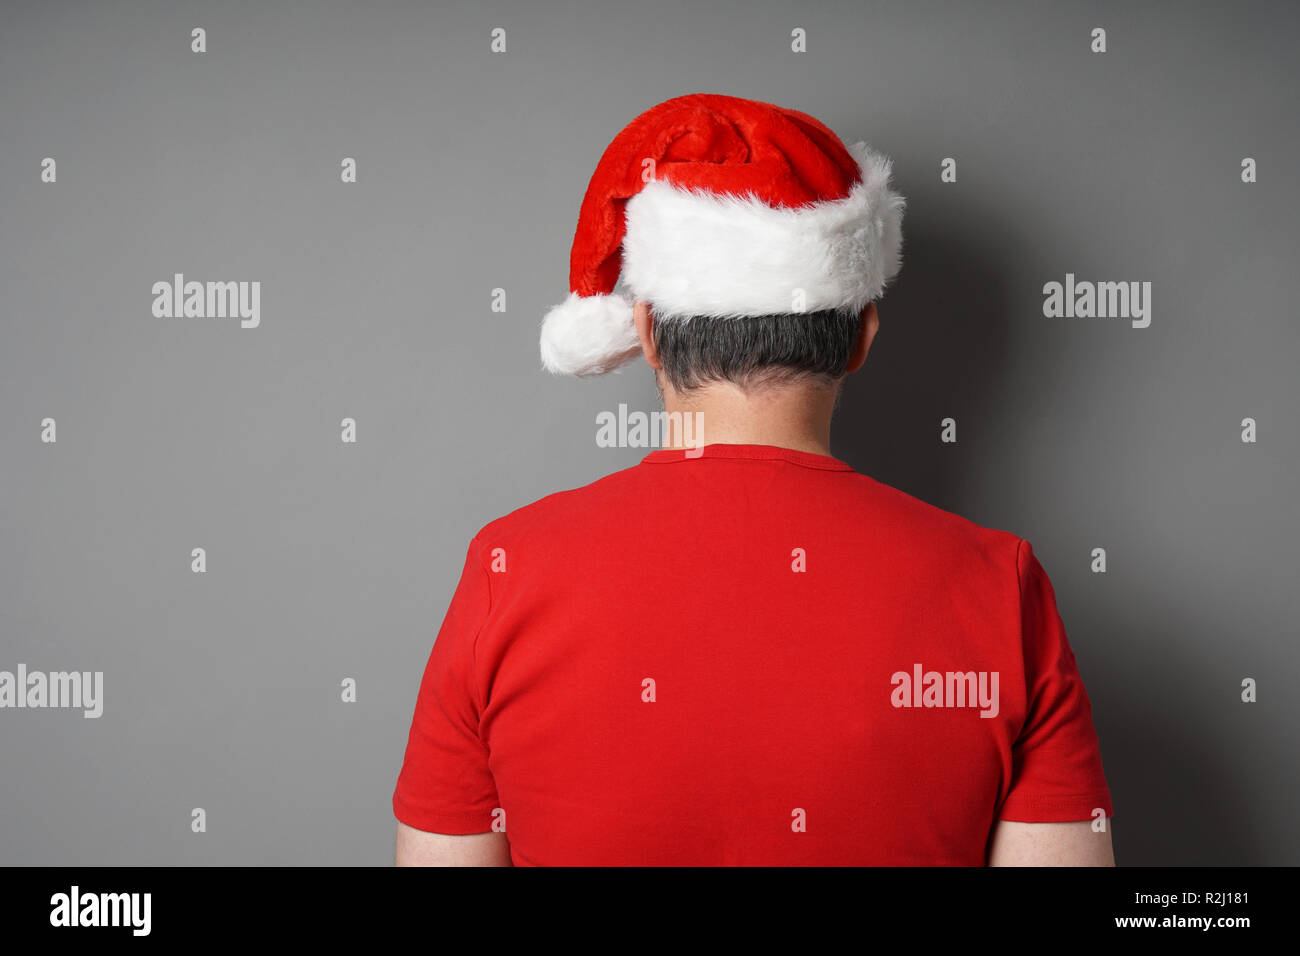 Vue arrière de man wearing santa hat et red t-shirt Banque D'Images